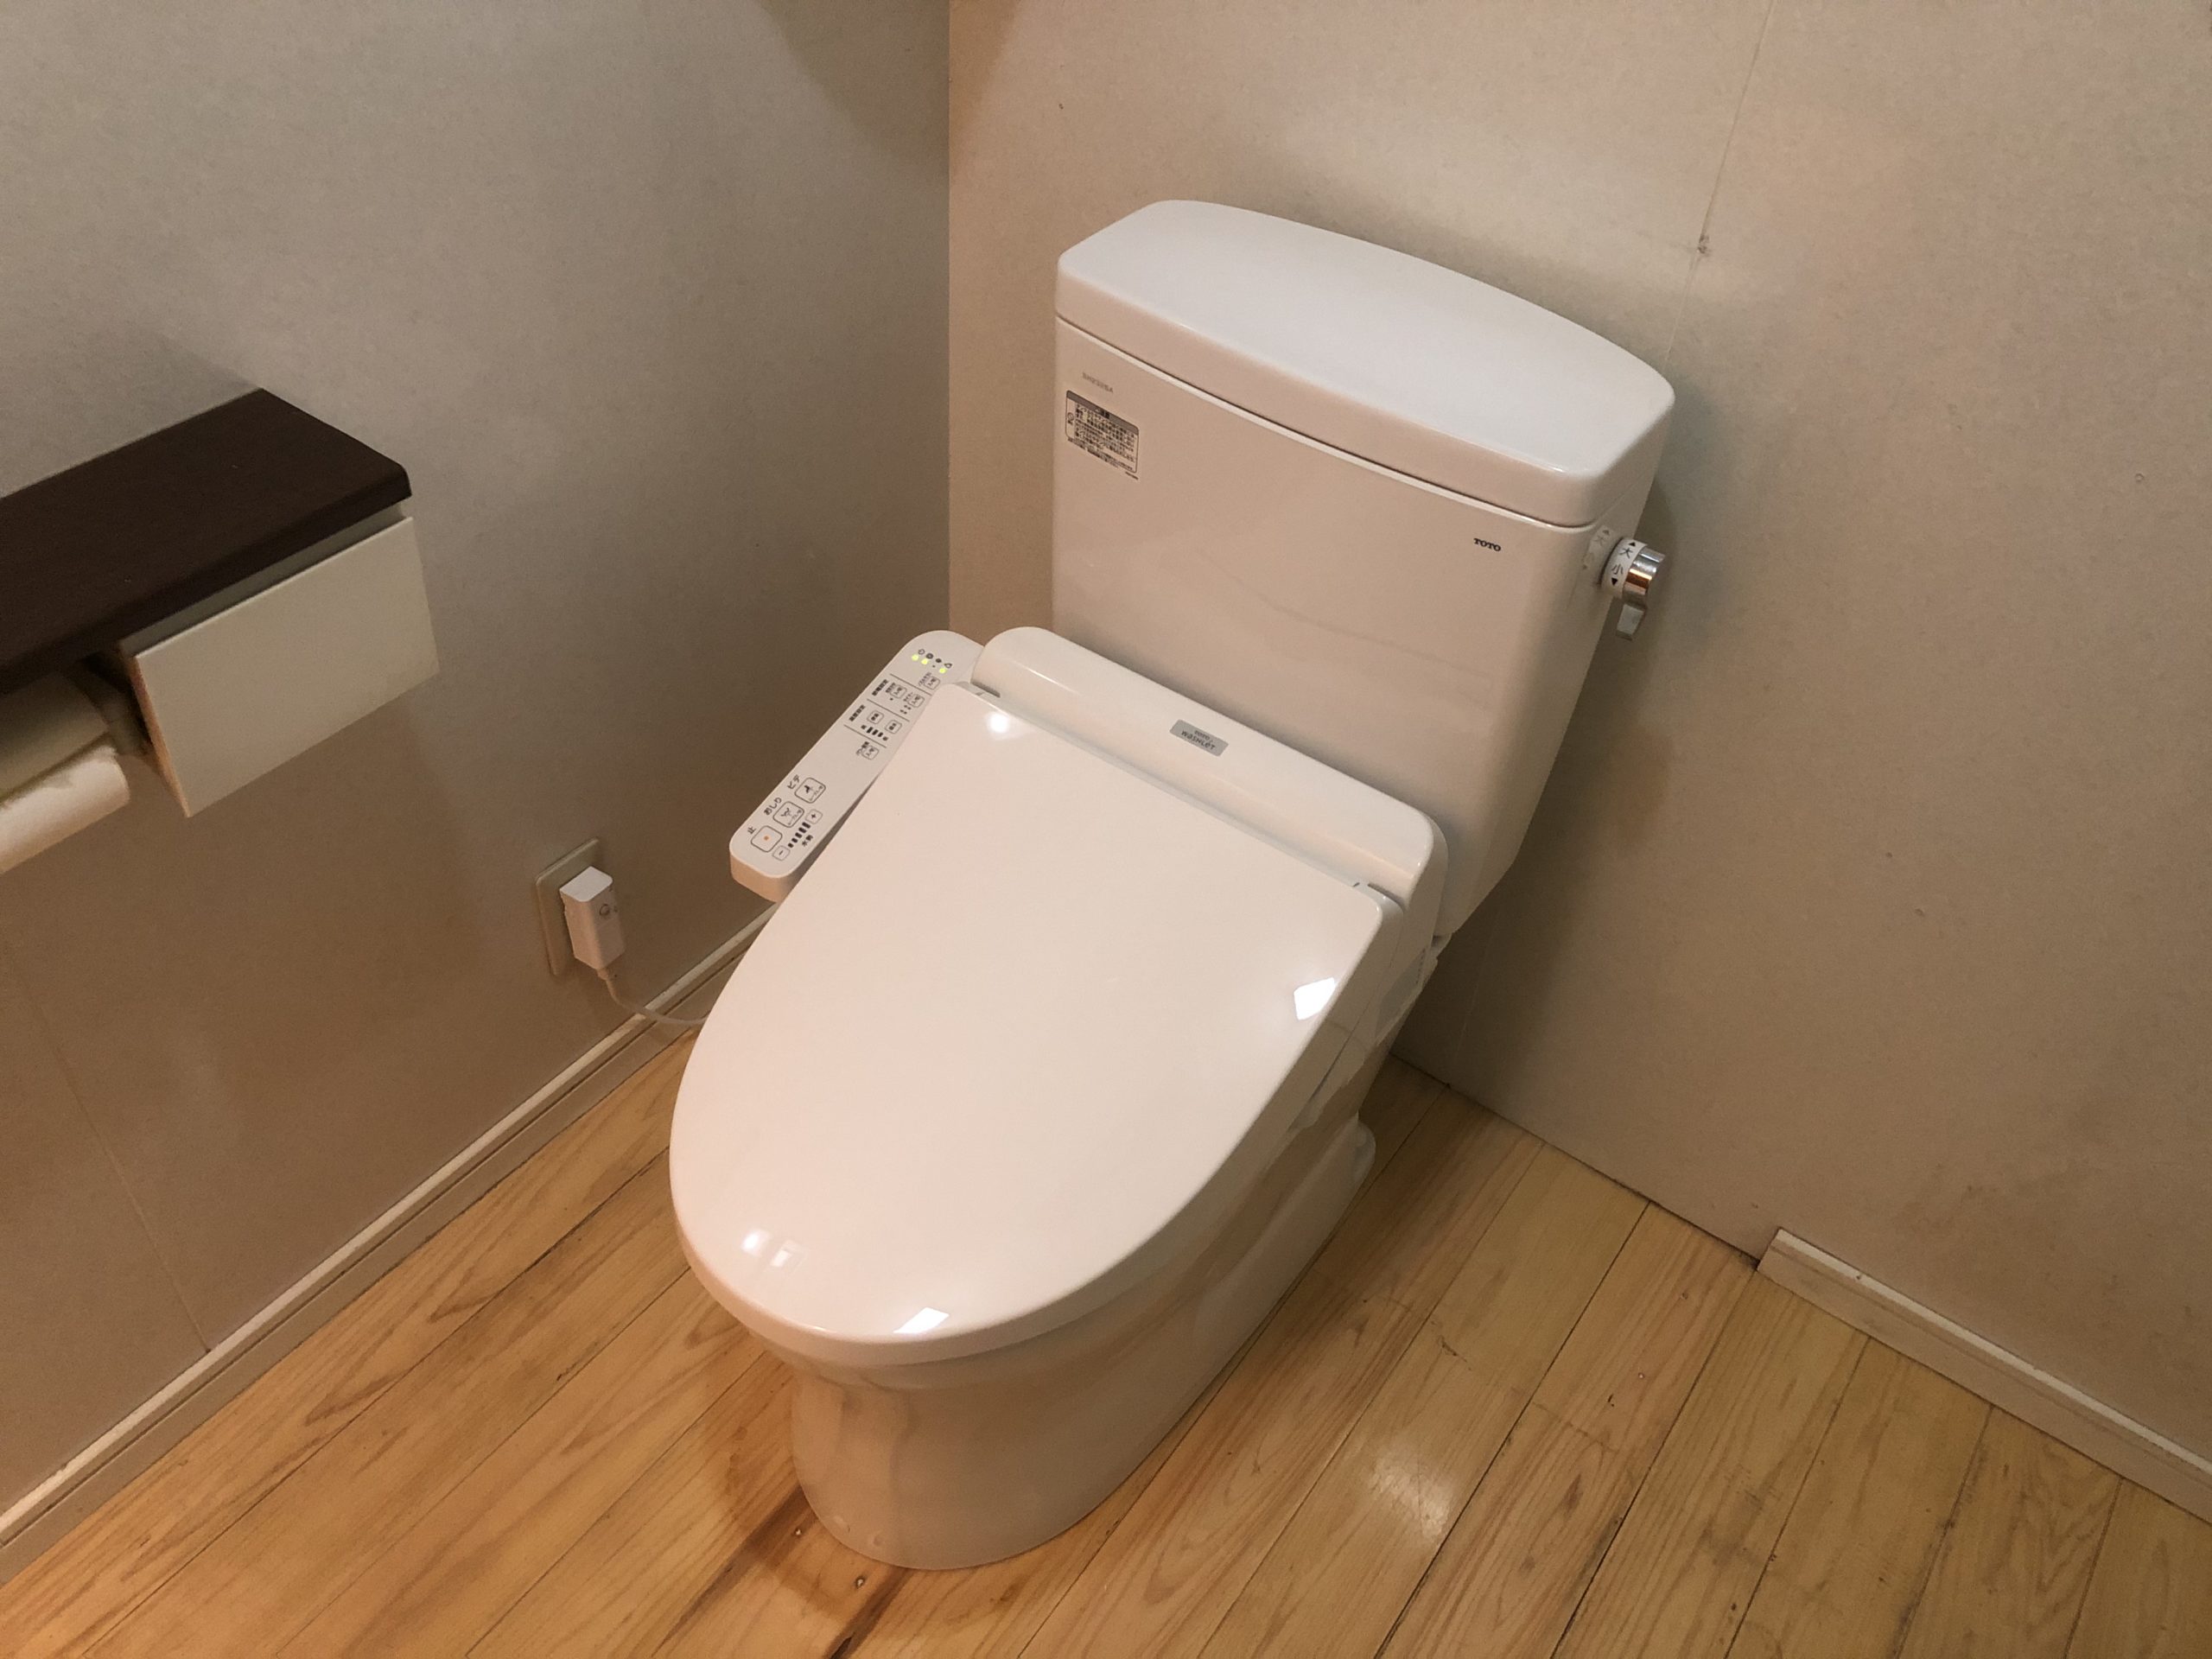 大阪市阿倍野区　戸建て住宅のトイレ取替リフォーム工事　TOTOレストパルからTOTOピュアレストQRに交換